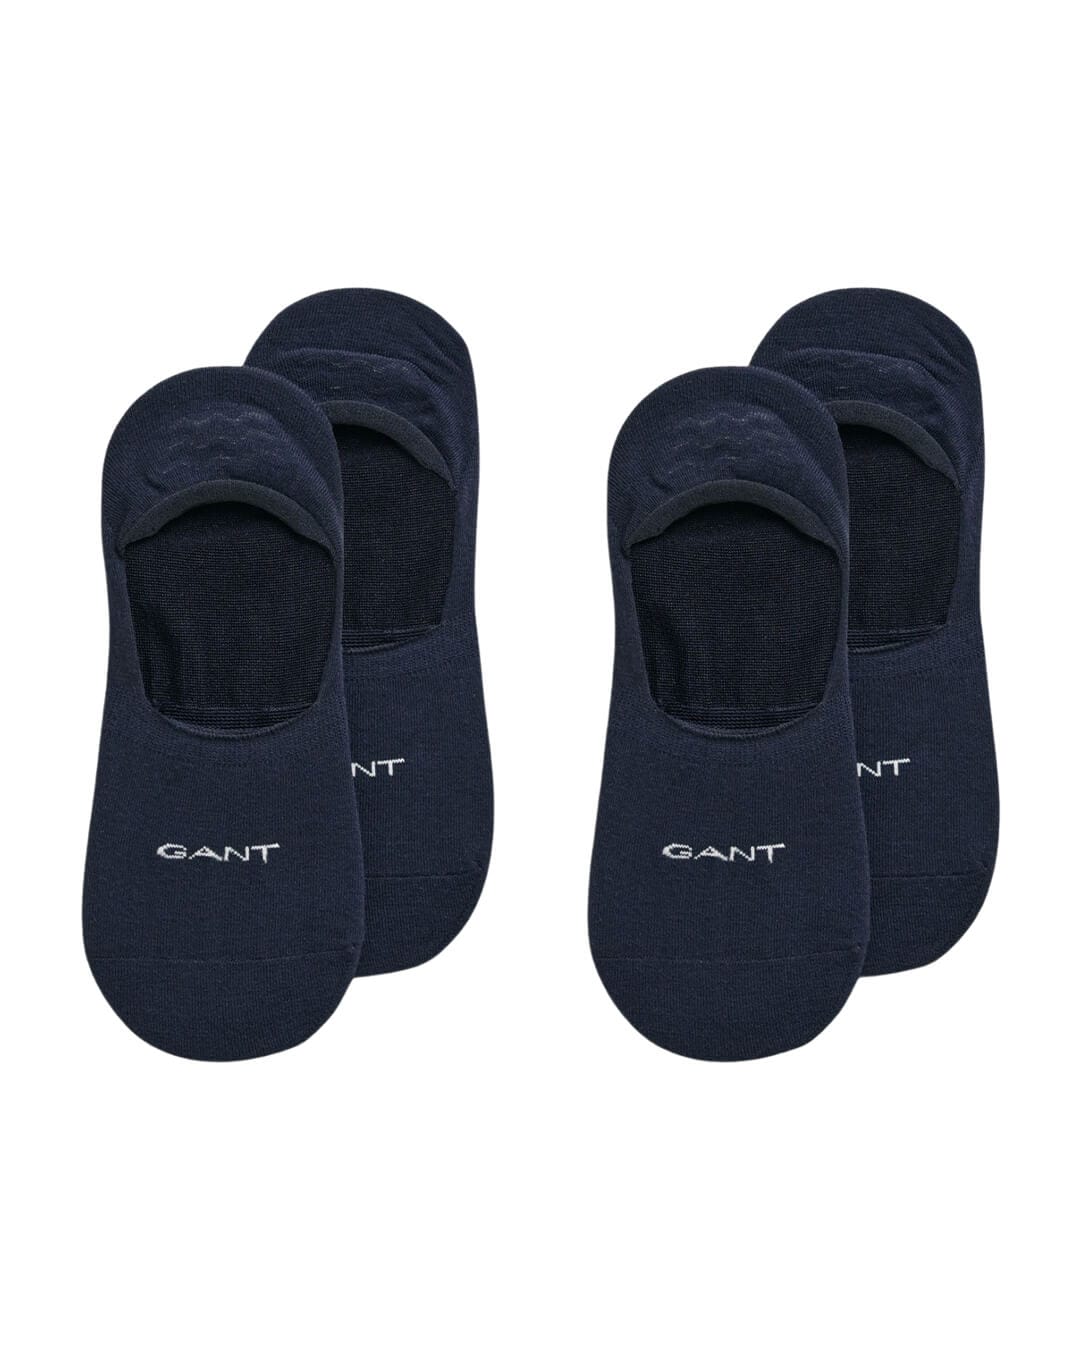 Gant Socks Gant Navy Invisible Socks 2-Pack